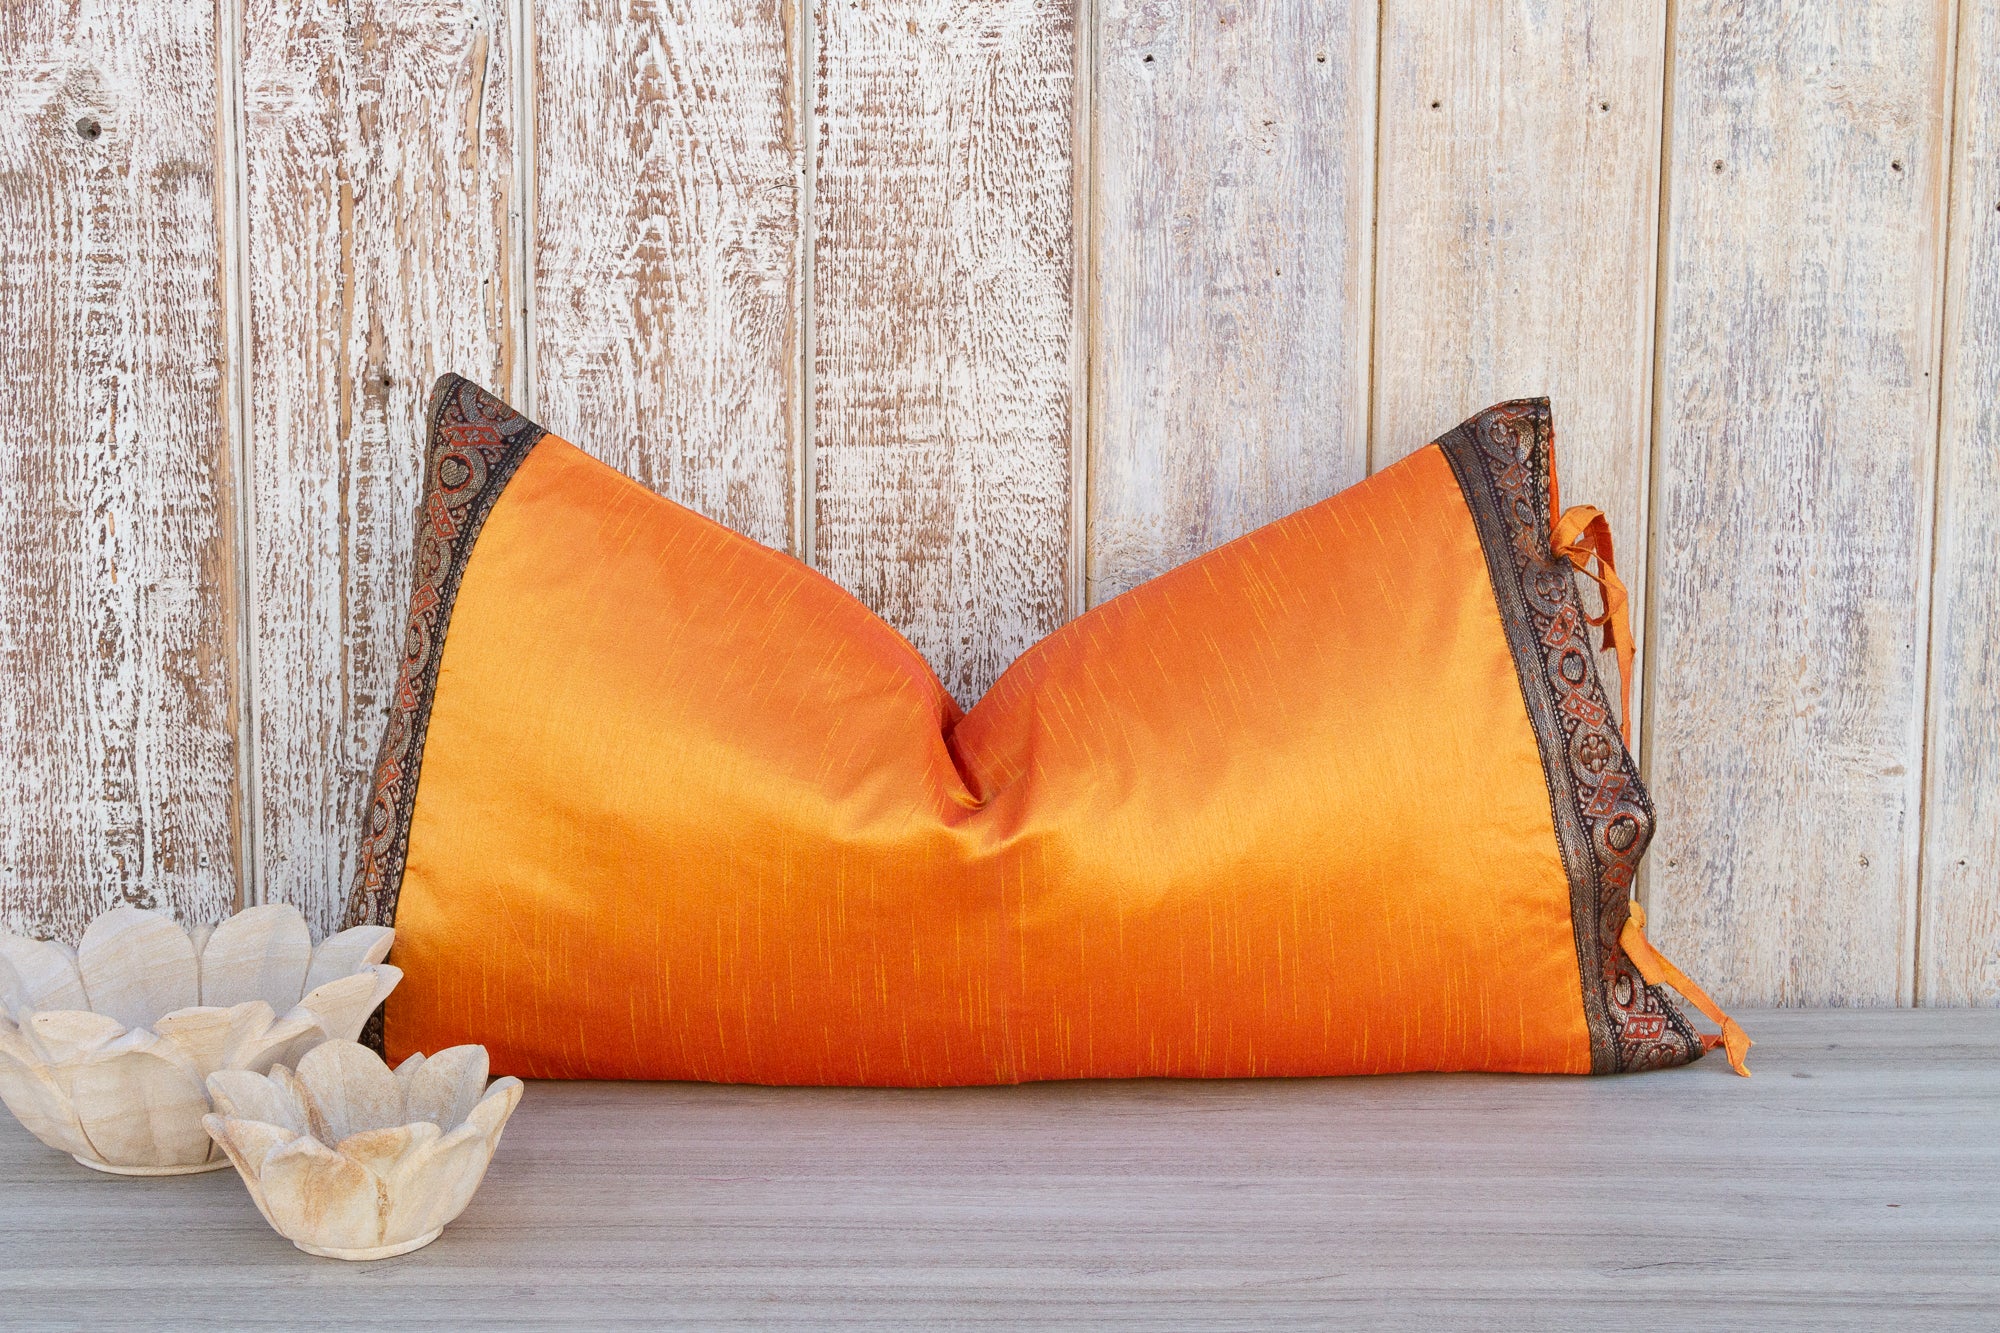 DE-COR | Ispirazione globale, Tangerine Grande cuscino di seta indiano festivo per la regina